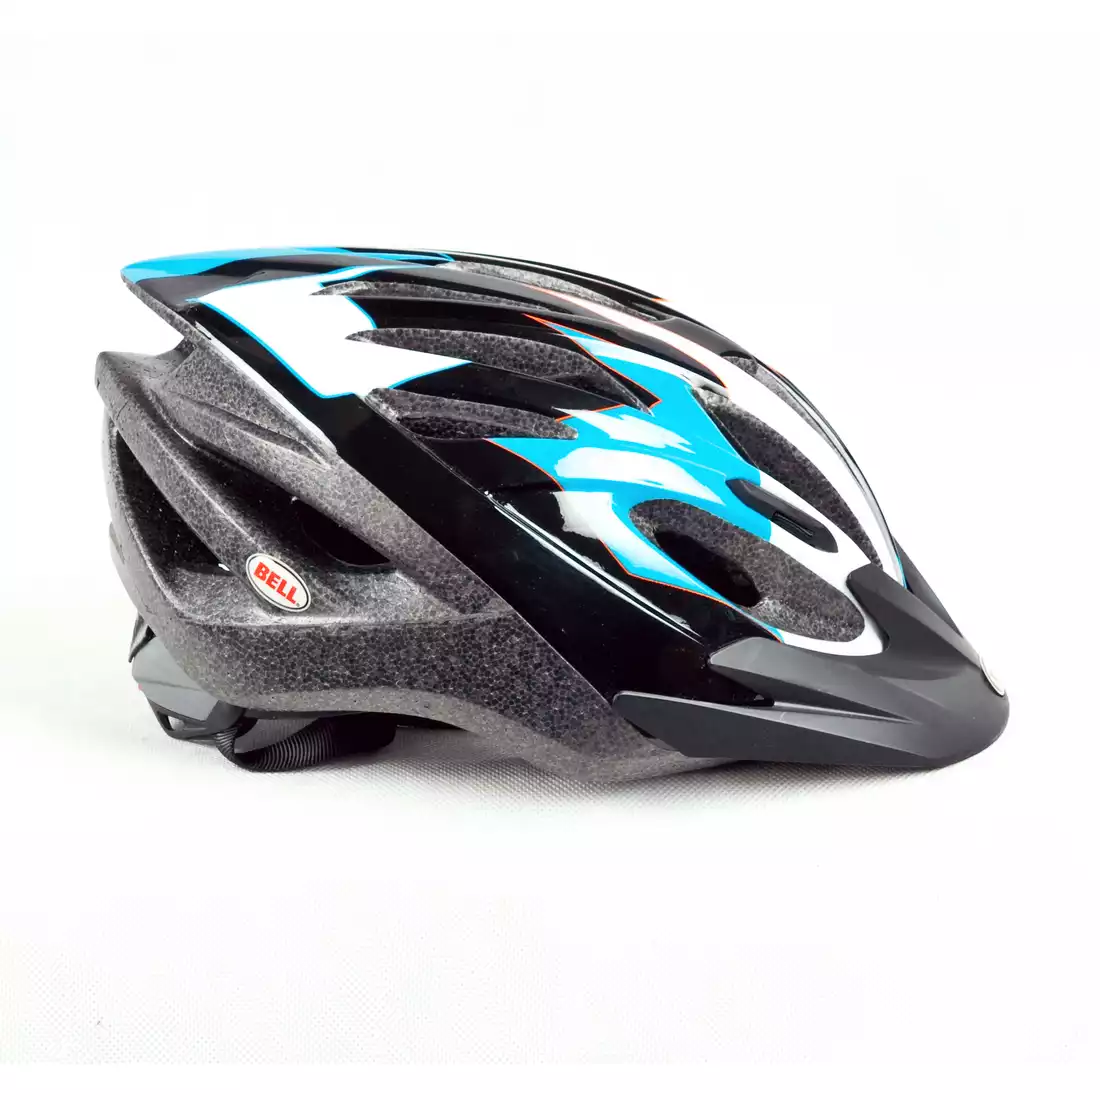 BELL PRESIDIO - kask rowerowy, czarno-niebieski